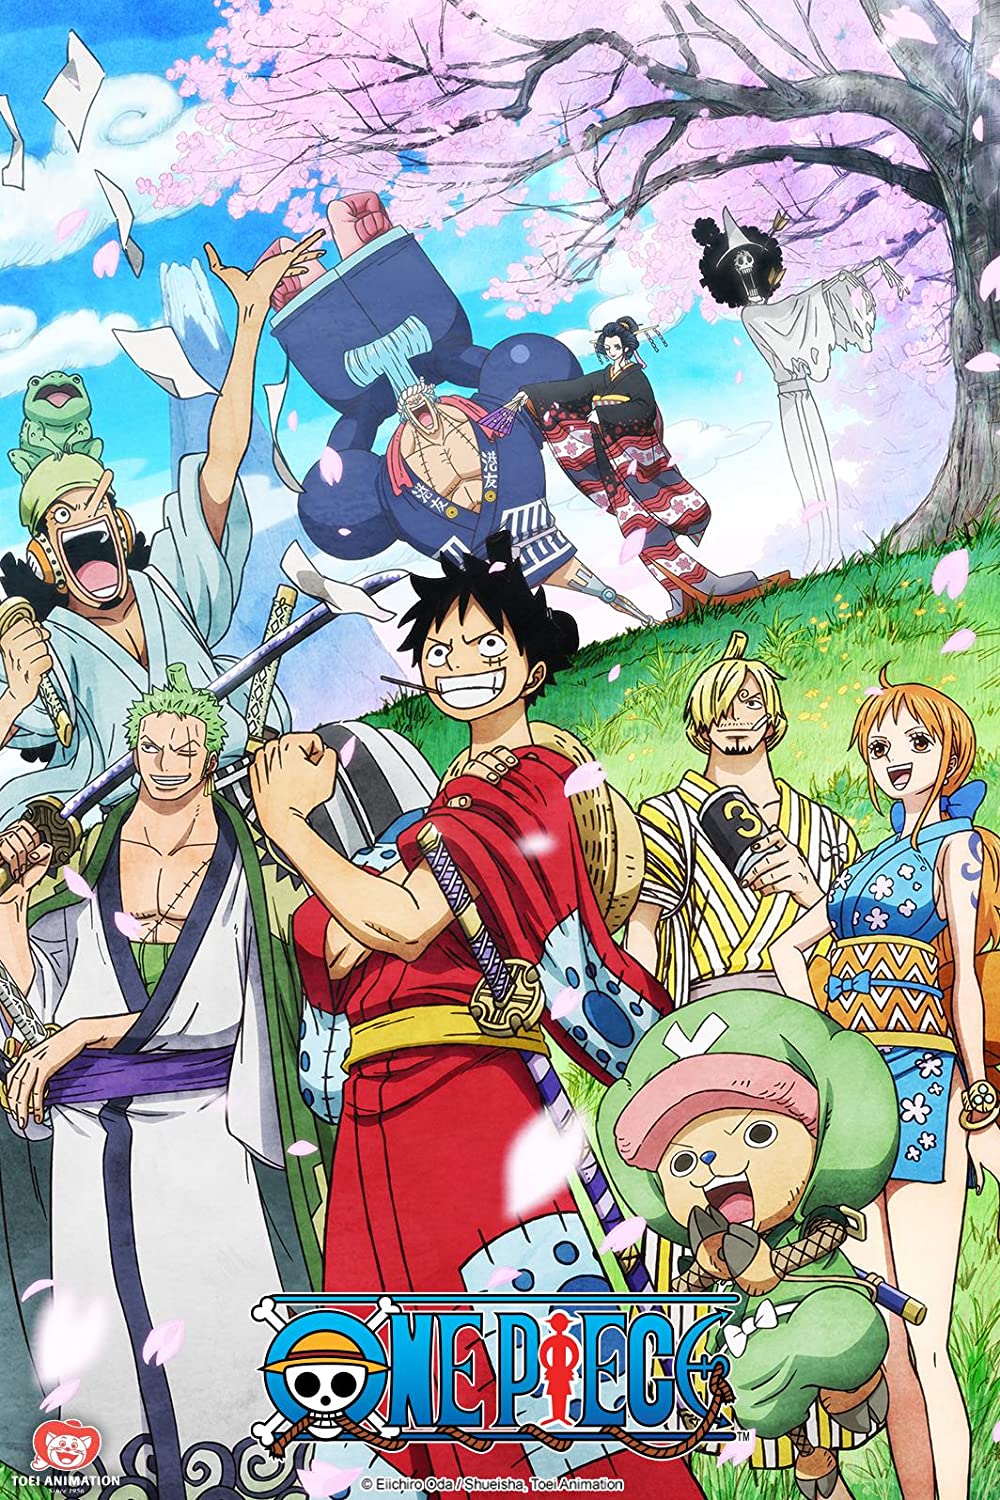 ดูหนังออนไลน์ฟรี One Piece Season 2 EP.71 วันพีช มุ่งสู่แกรนด์ไลน์ ซีซั่น 2 ตอนที่ 71